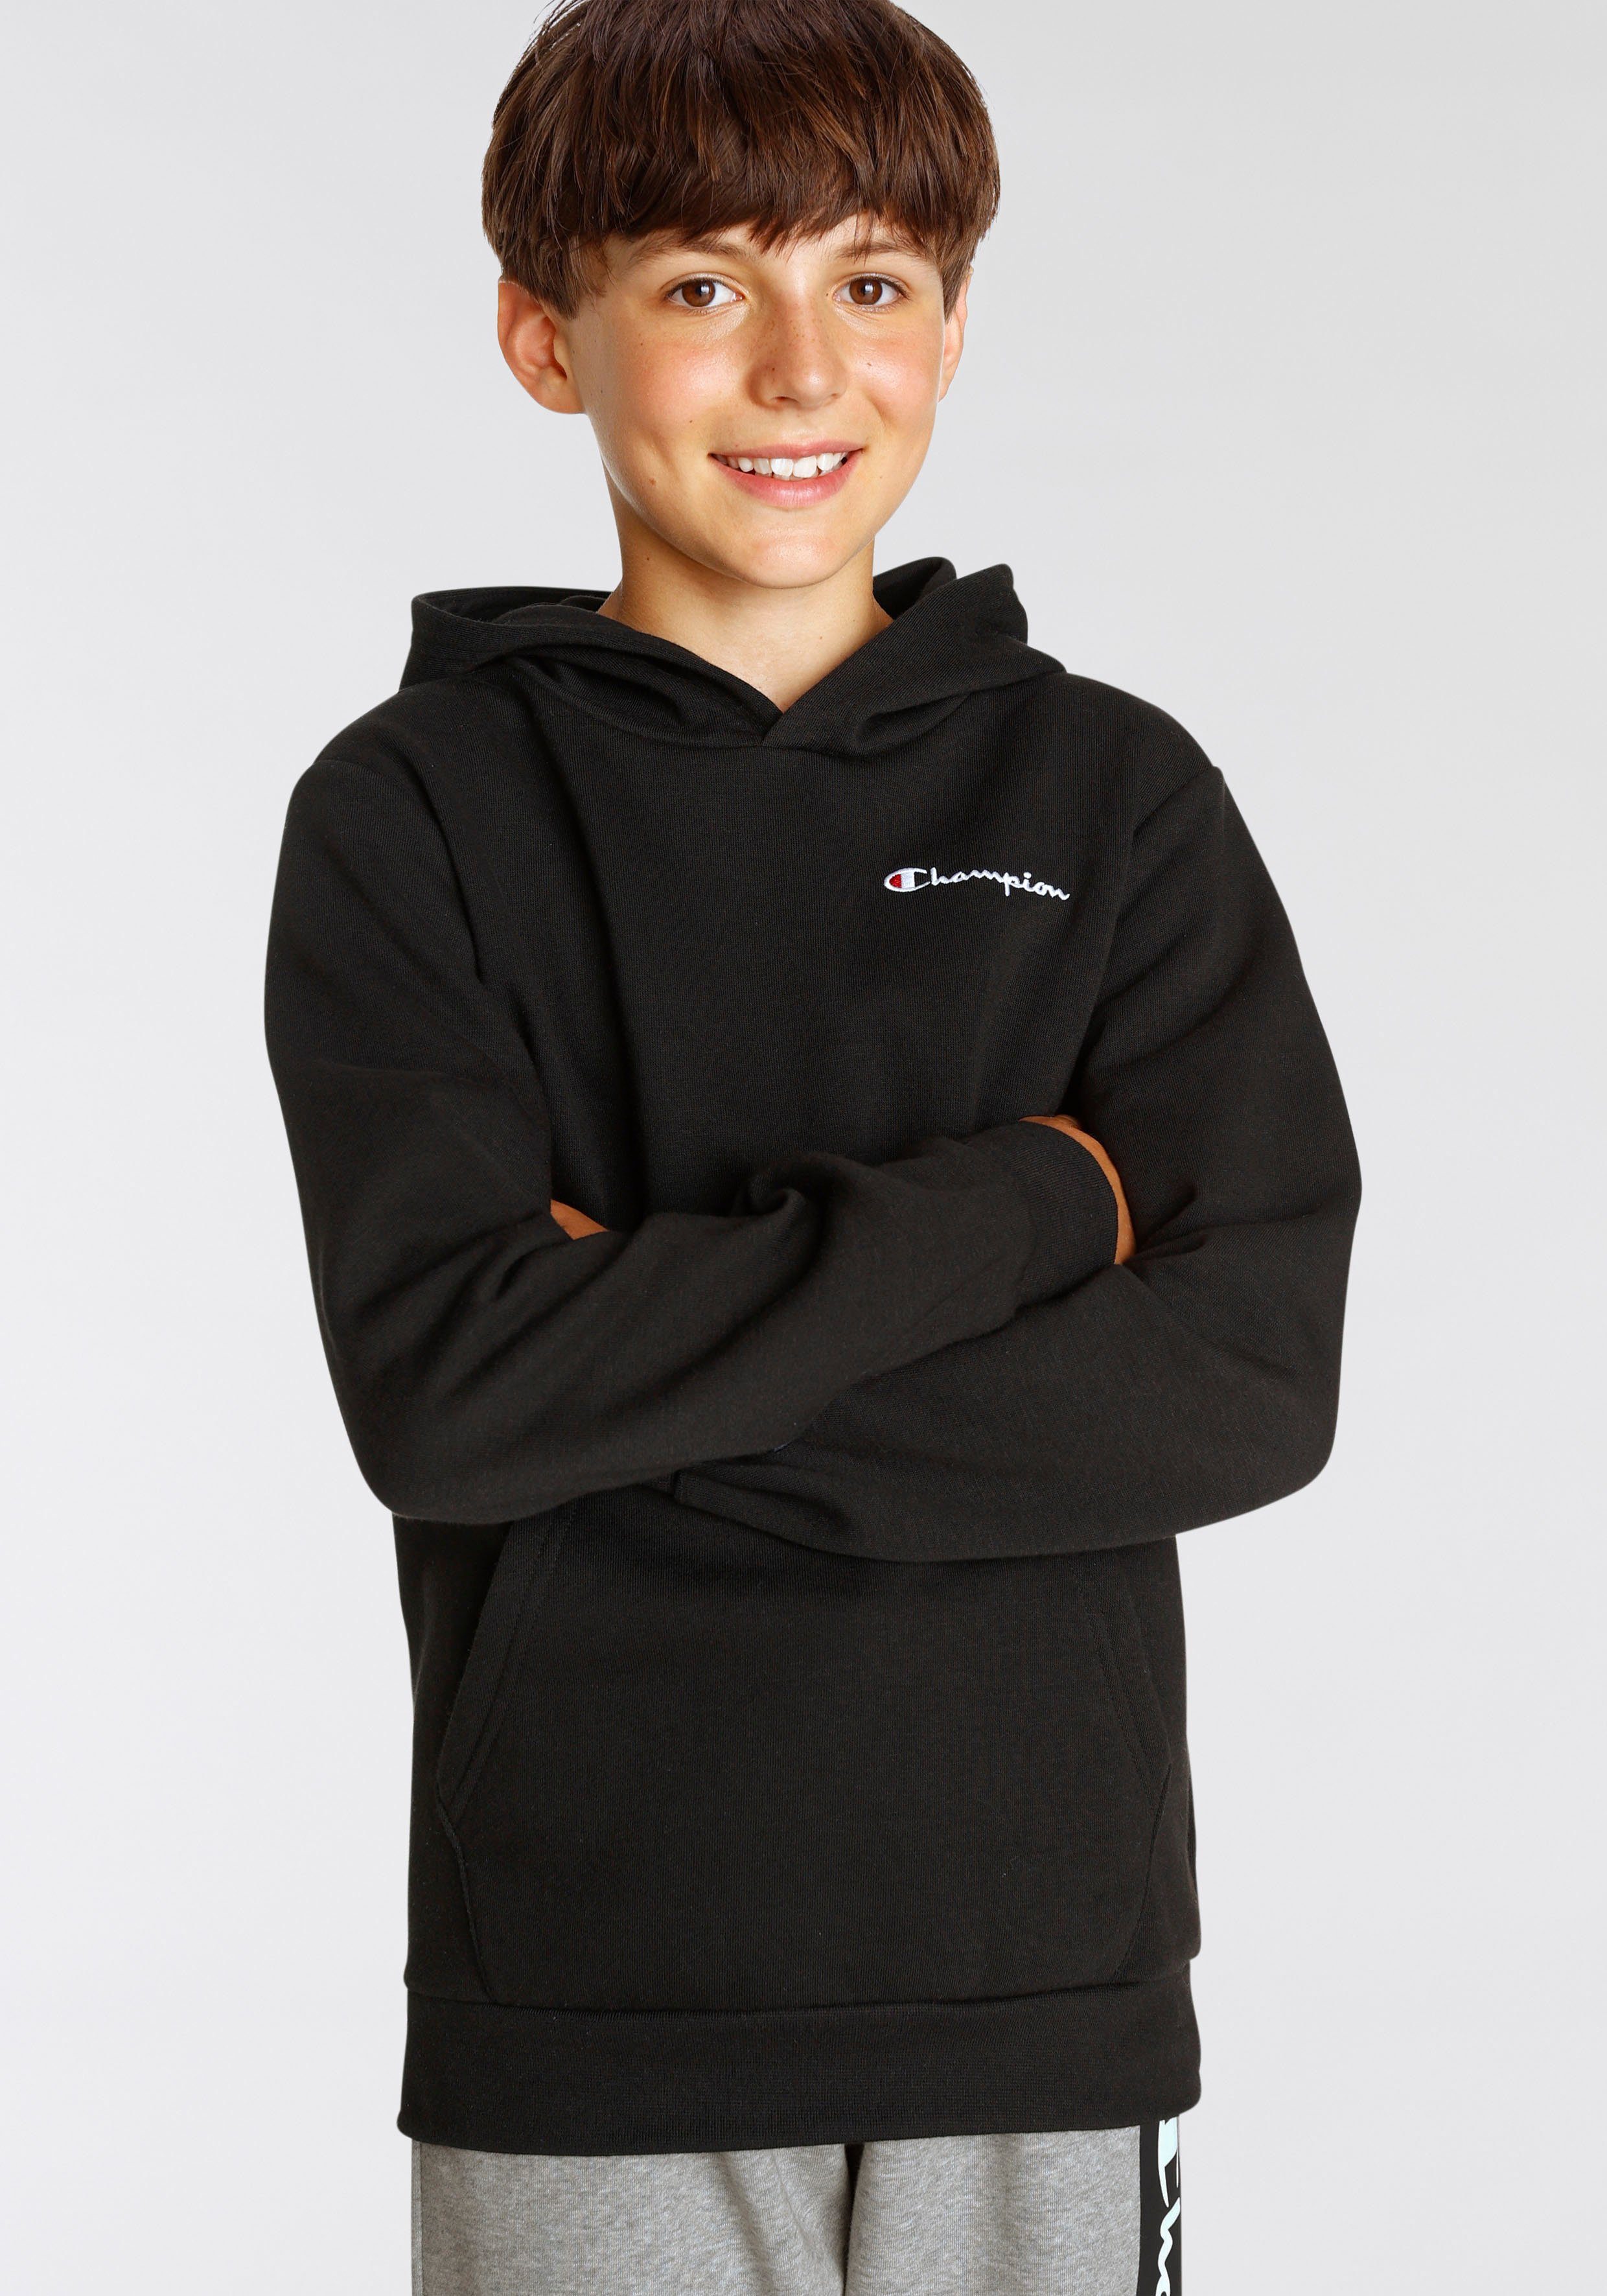 Kinder Logo Sweatshirt Classic Hooded schwarz Sweatshirt Champion - small für